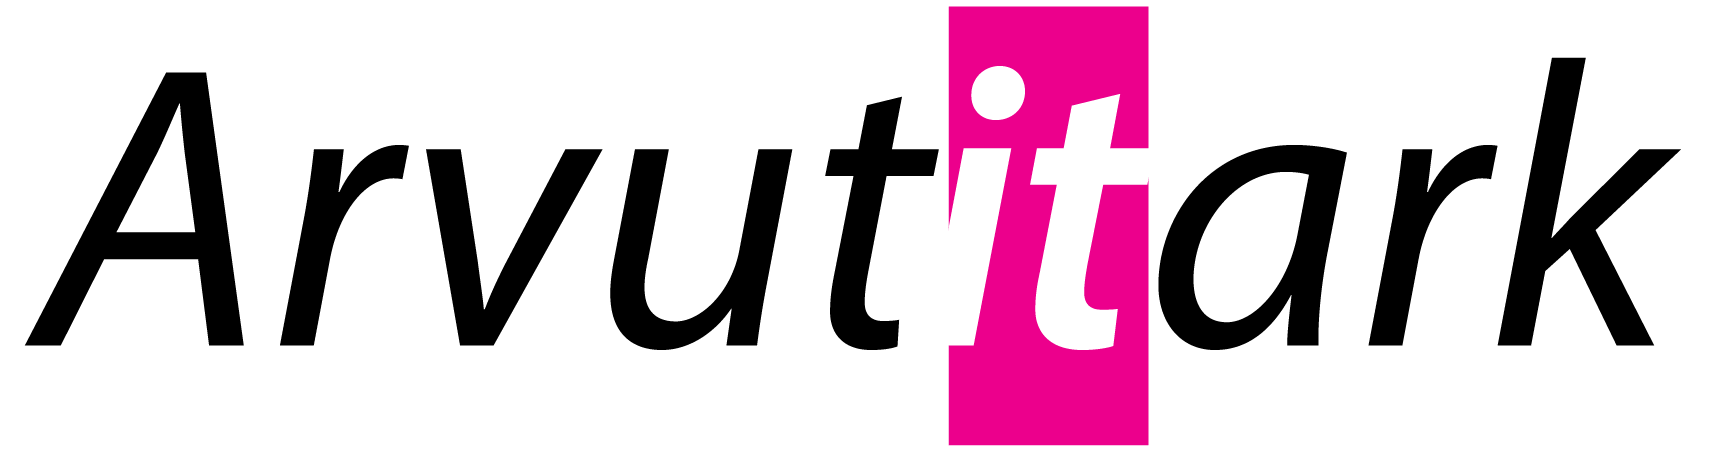 Arvutitark logo